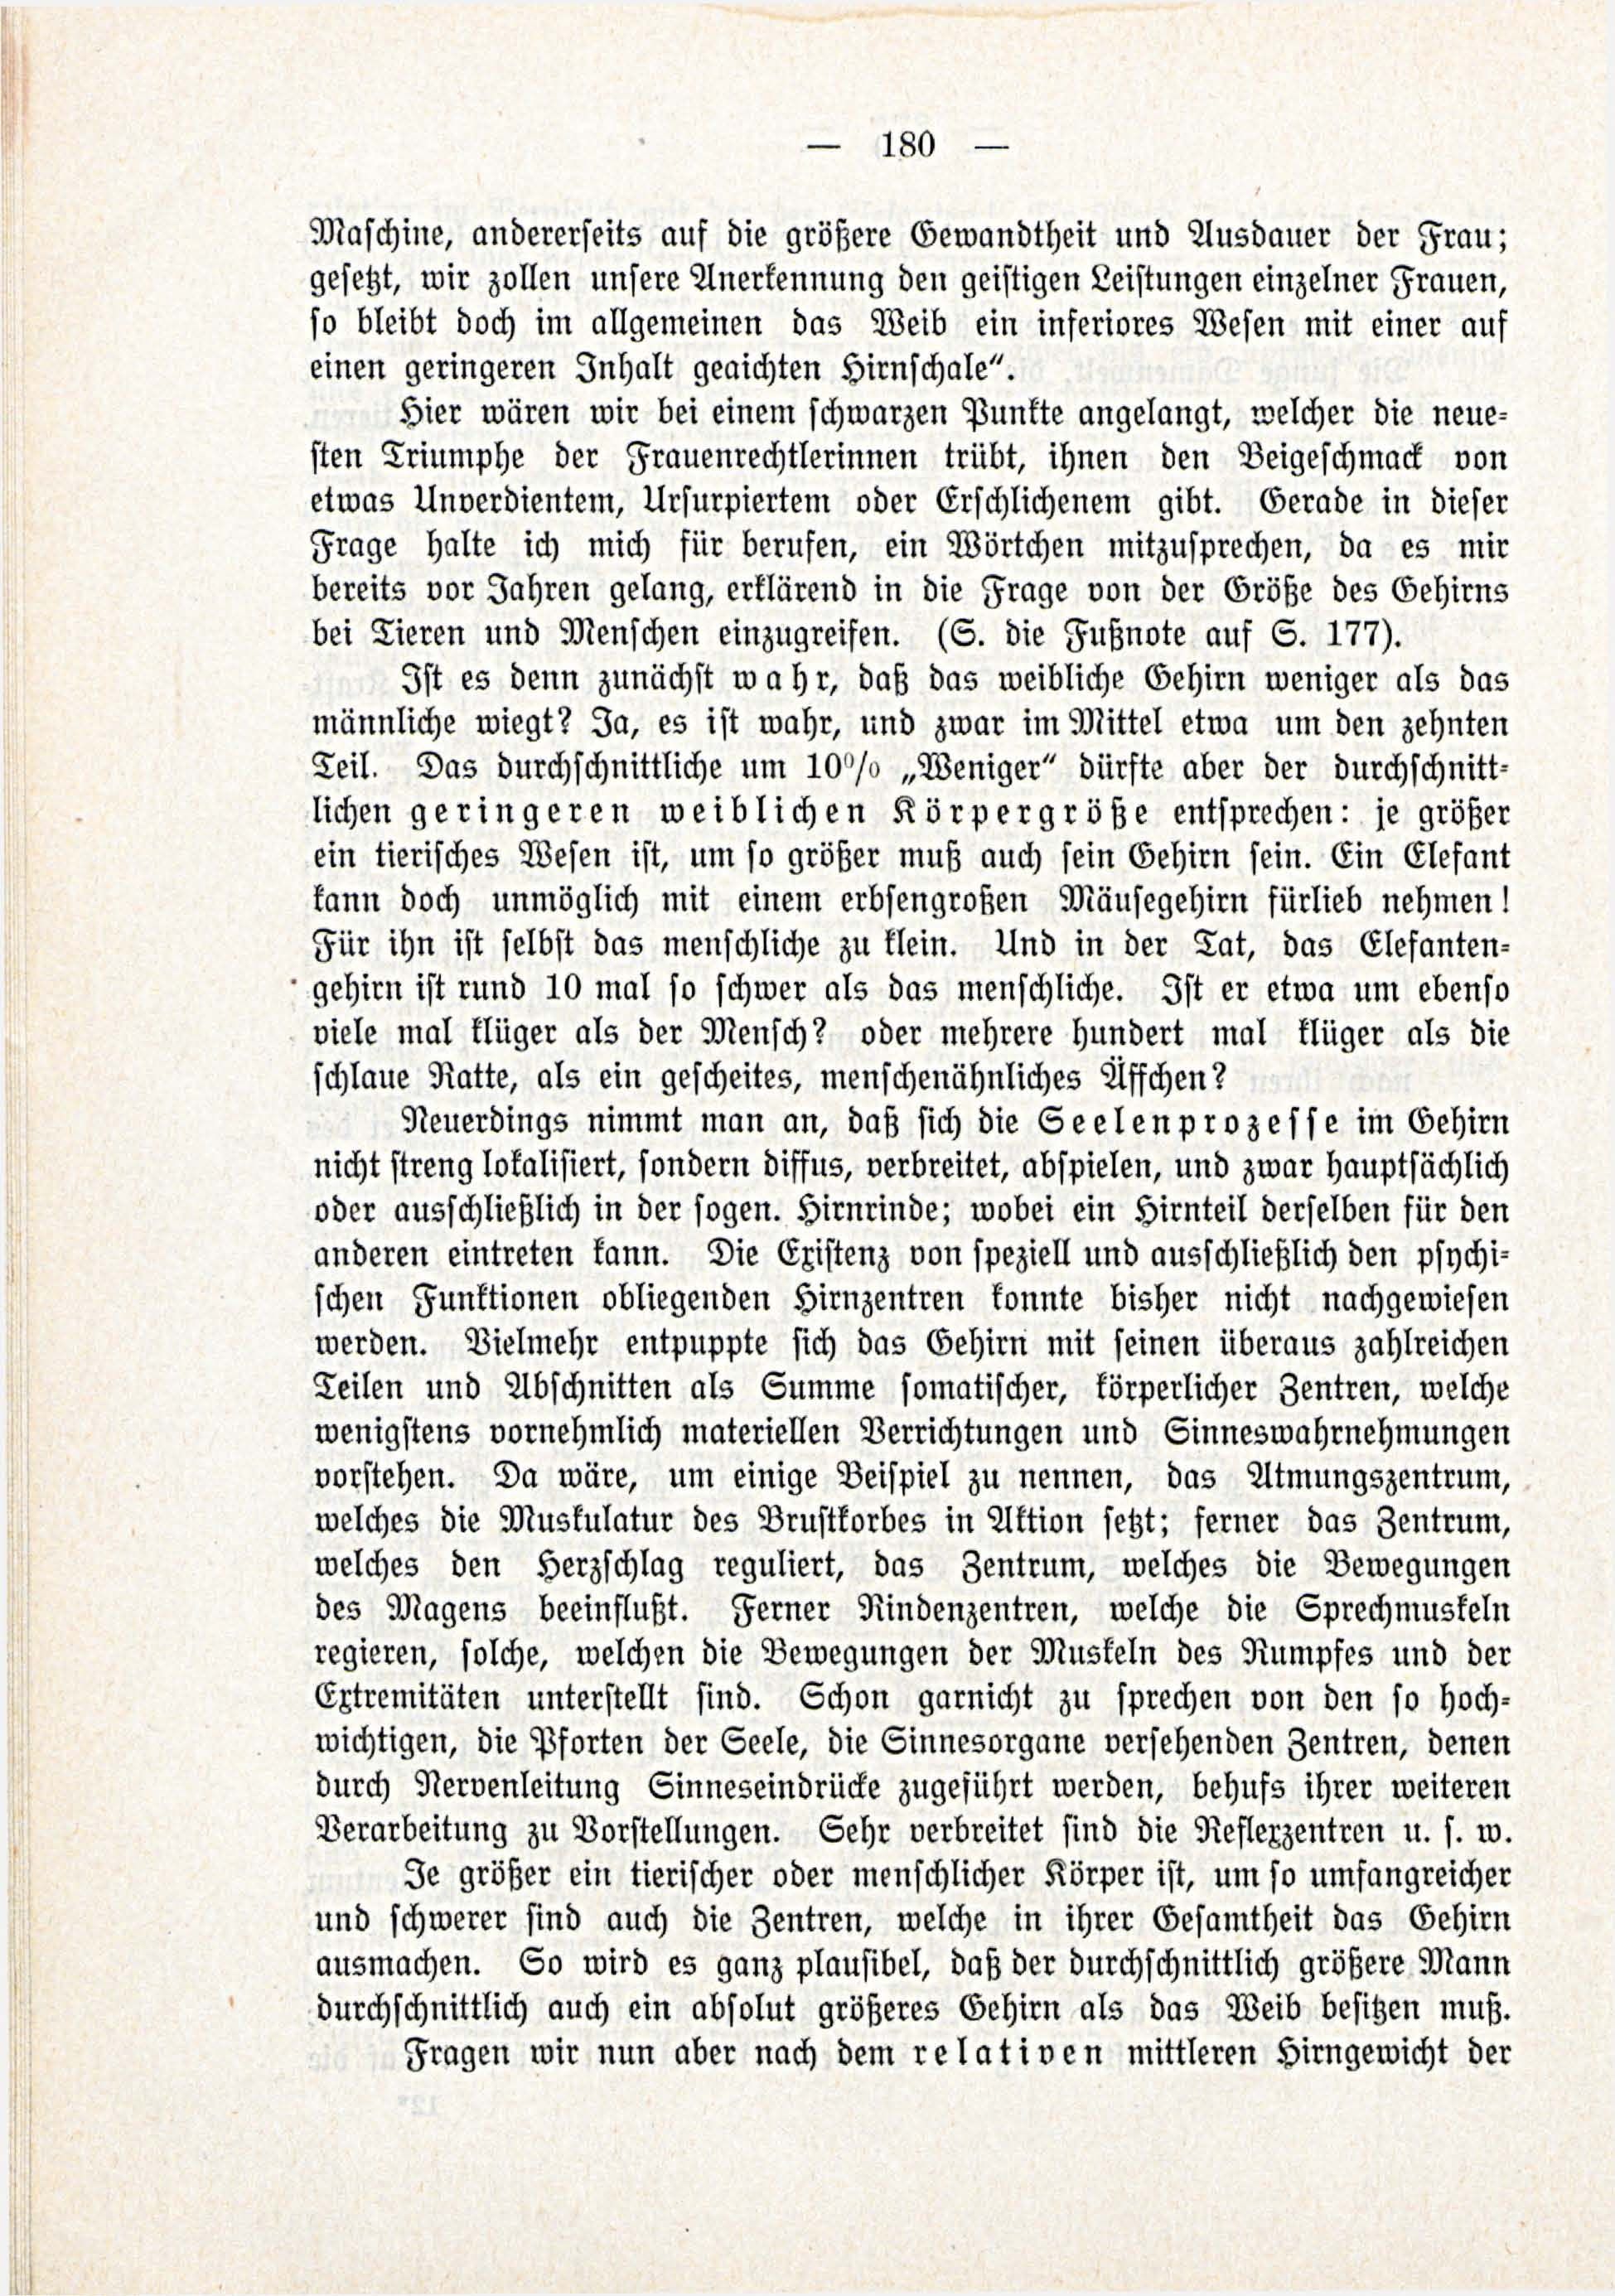 Deutsche Monatsschrift für Russland [3/03] (1914) | 26. (180) Main body of text